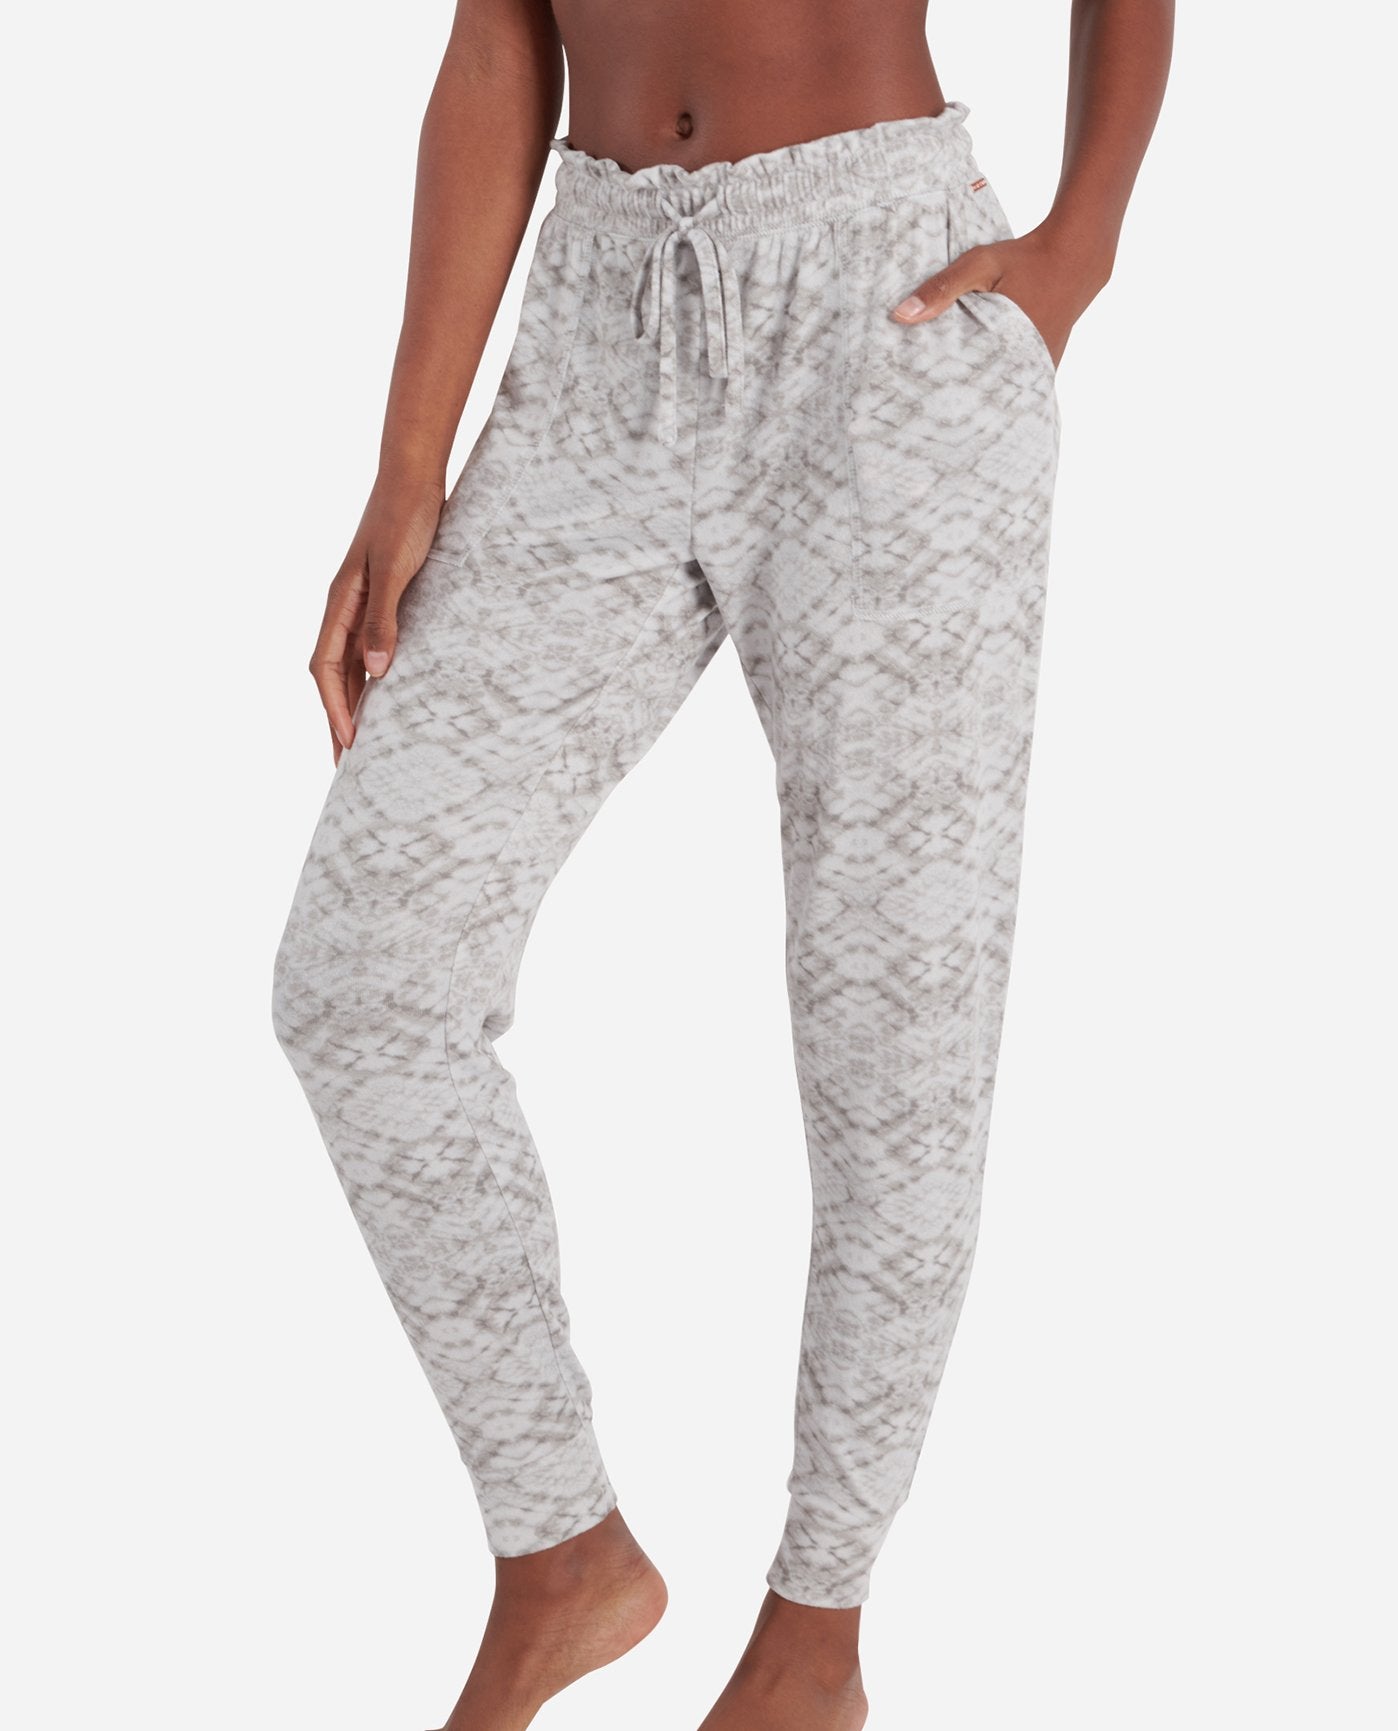 Danskin Women’s Sleepwear Pajama Pants